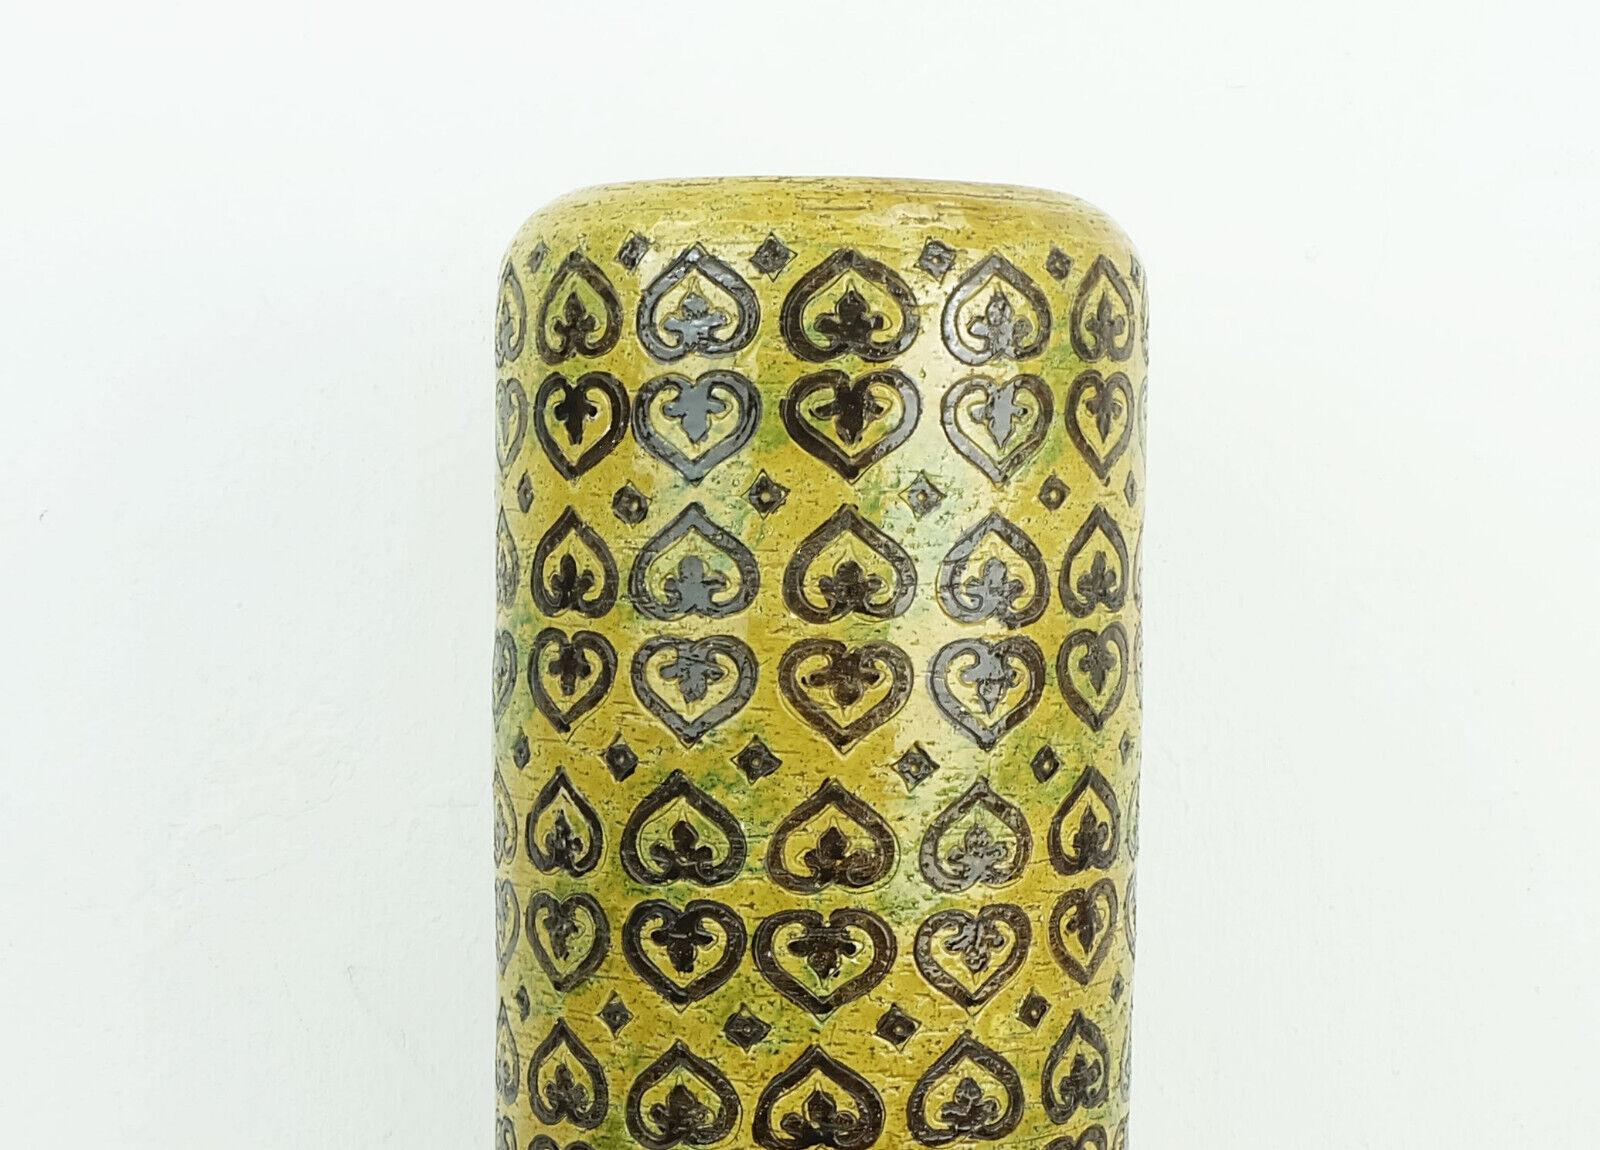 Bitossi Vase in einer sehr seltenen XL Größe. Aldo Londi für Bitossi Ceramiche, Florenz, Italien aus den 60er Jahren. Dekor Moresco. Glasur in Ocker und Dunkelgelb mit etwas Grün, abstraktes Reliefmuster in Braun. Auf der Unterseite mit M 3/45 Italy